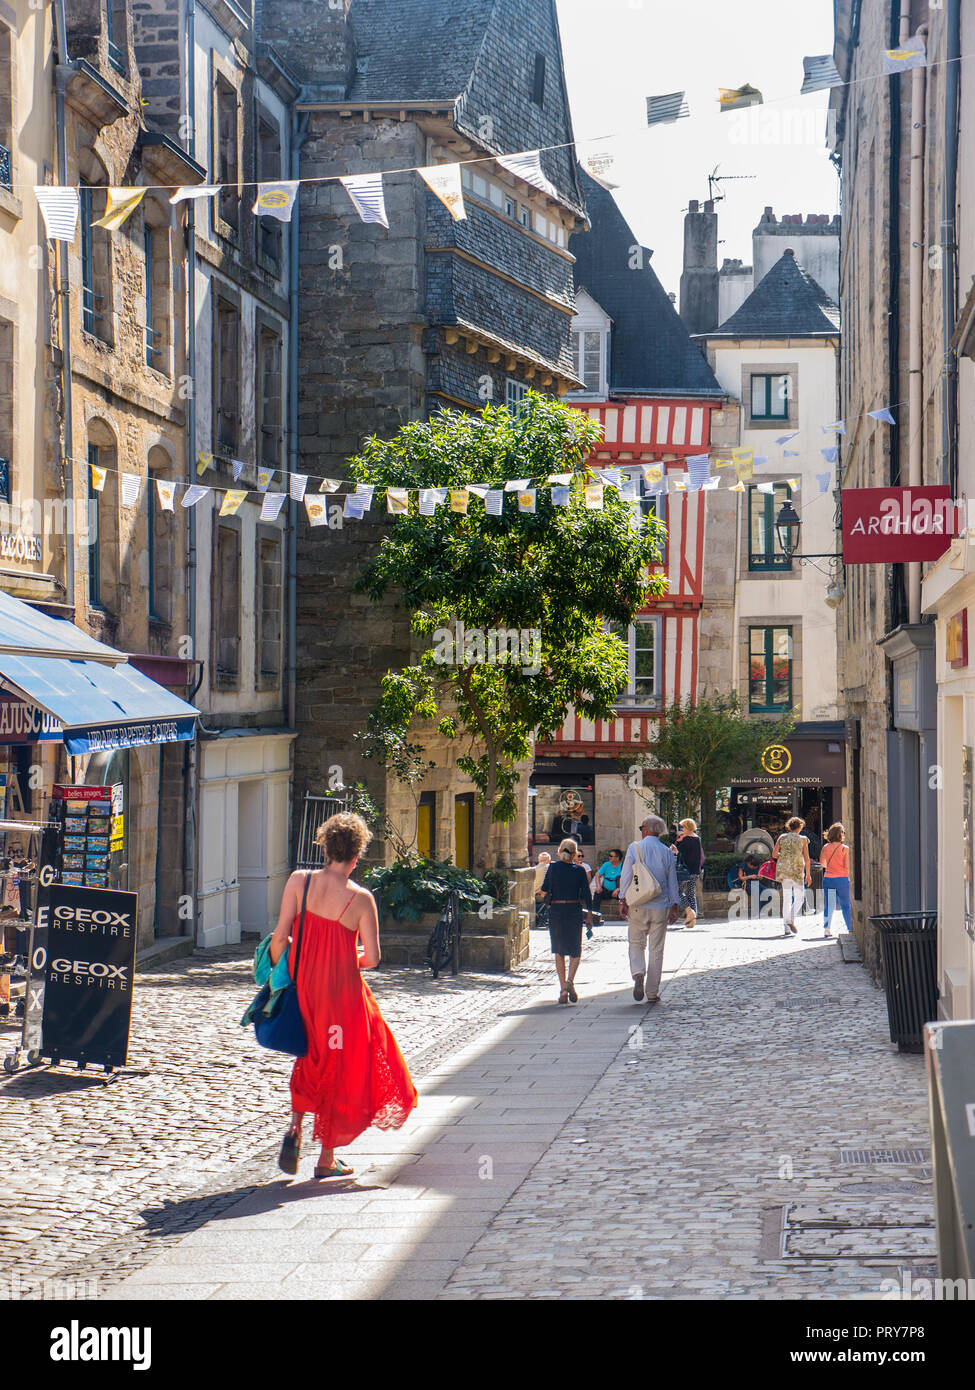 Quimper ciudad vieja medieval histórico centro comercial peatonal con sol de verano a los compradores de los turistas y visitantes de Quimper Finistère Bretaña Francia Foto de stock